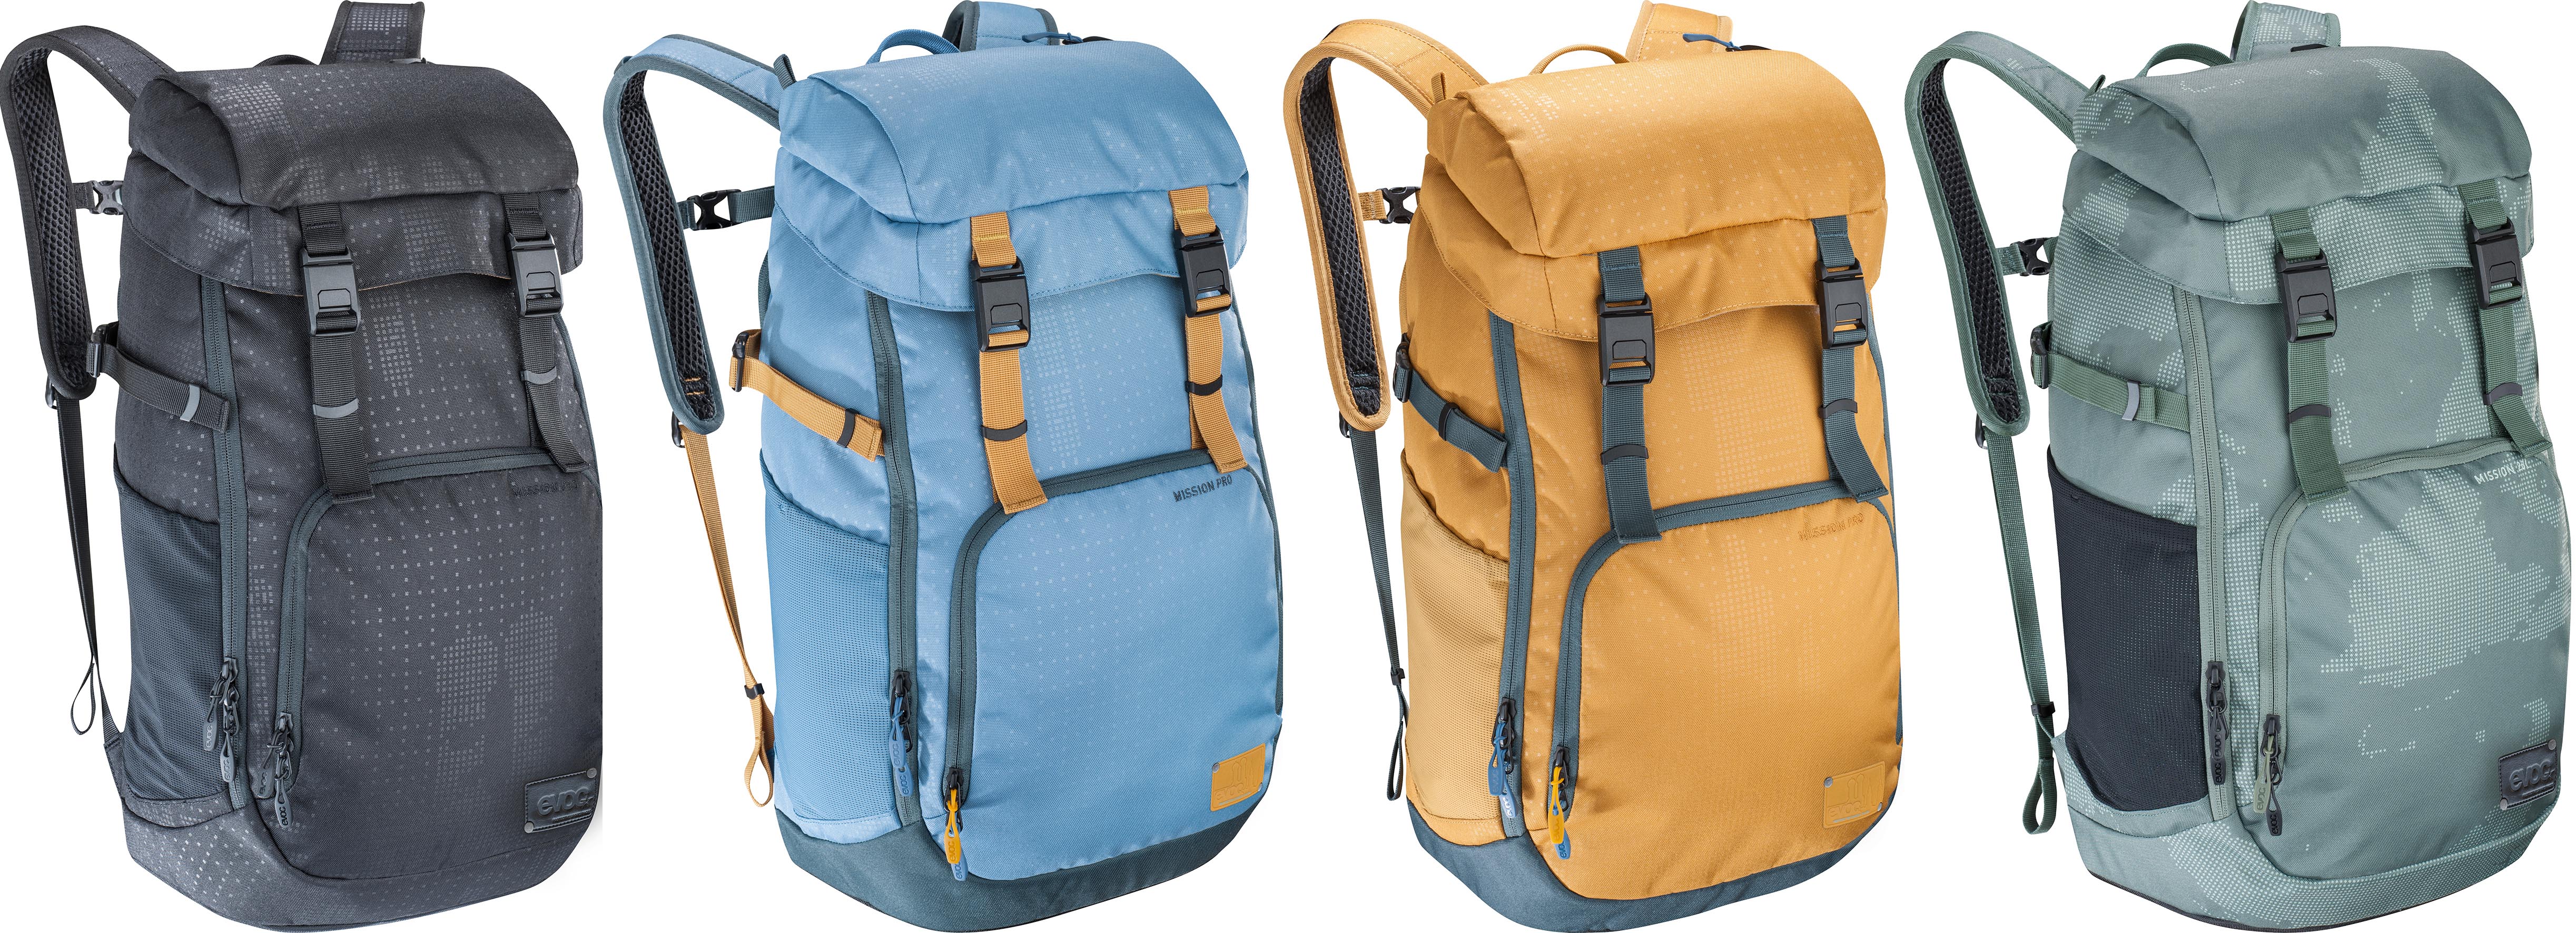 Evoc Mission Pro Backpacks